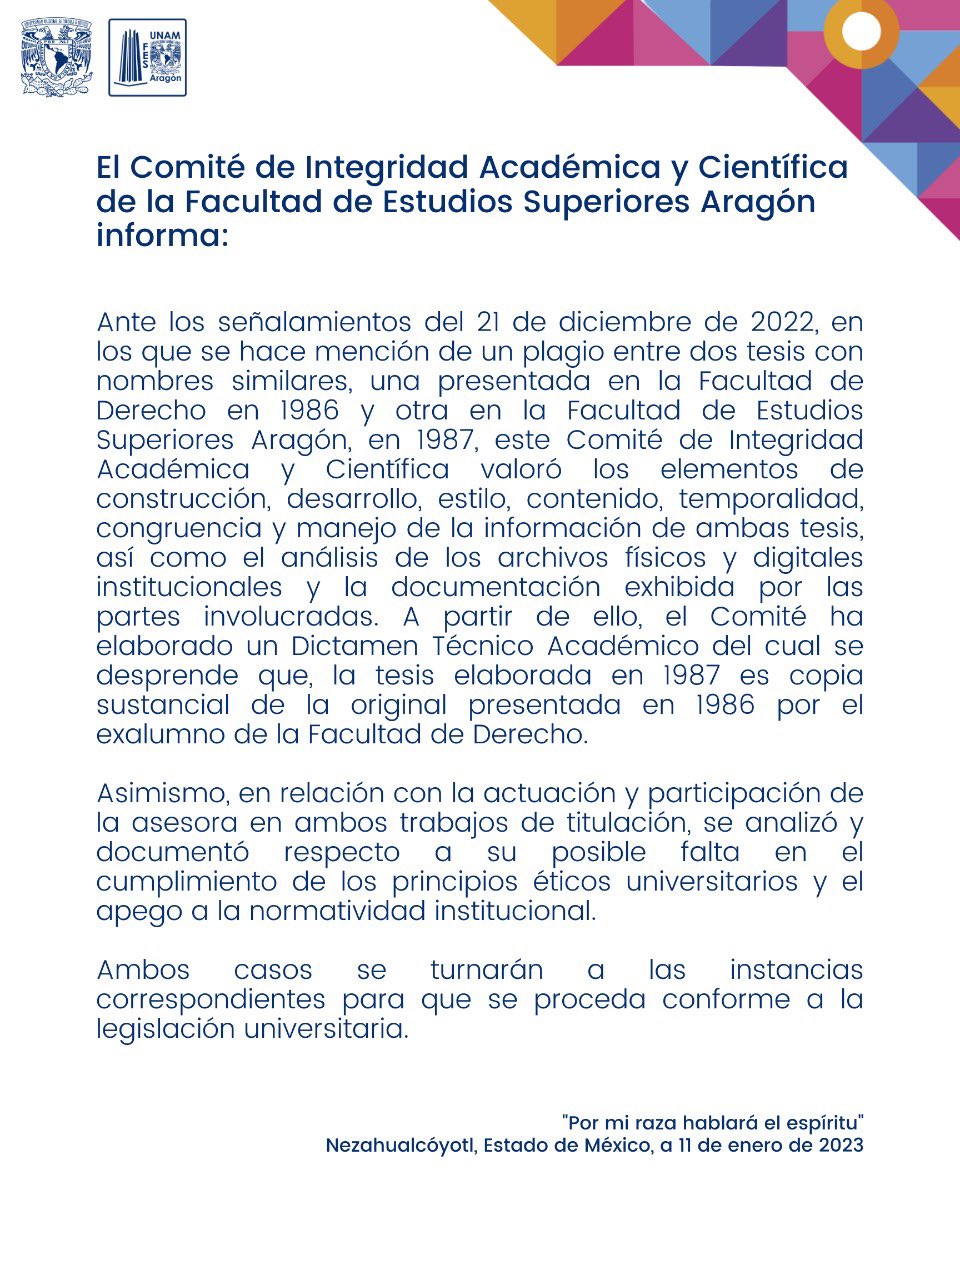 La FES Aragón indicó que la tesis de Yasmín Esquivel fue una "copia sustancial" (FES Aragón)